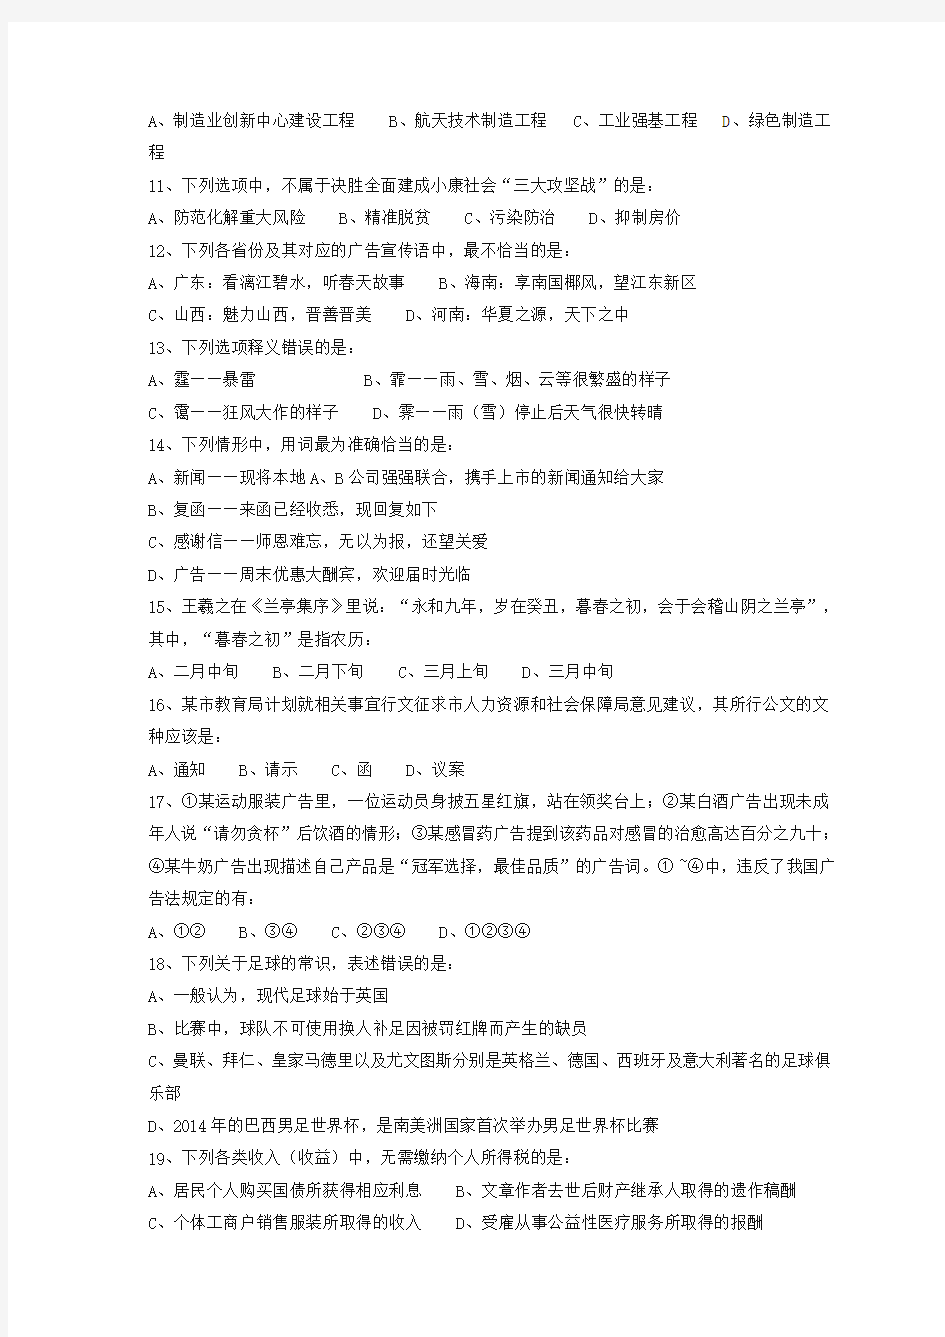 整理2018年重庆市公务员录用考试行测真题下半年